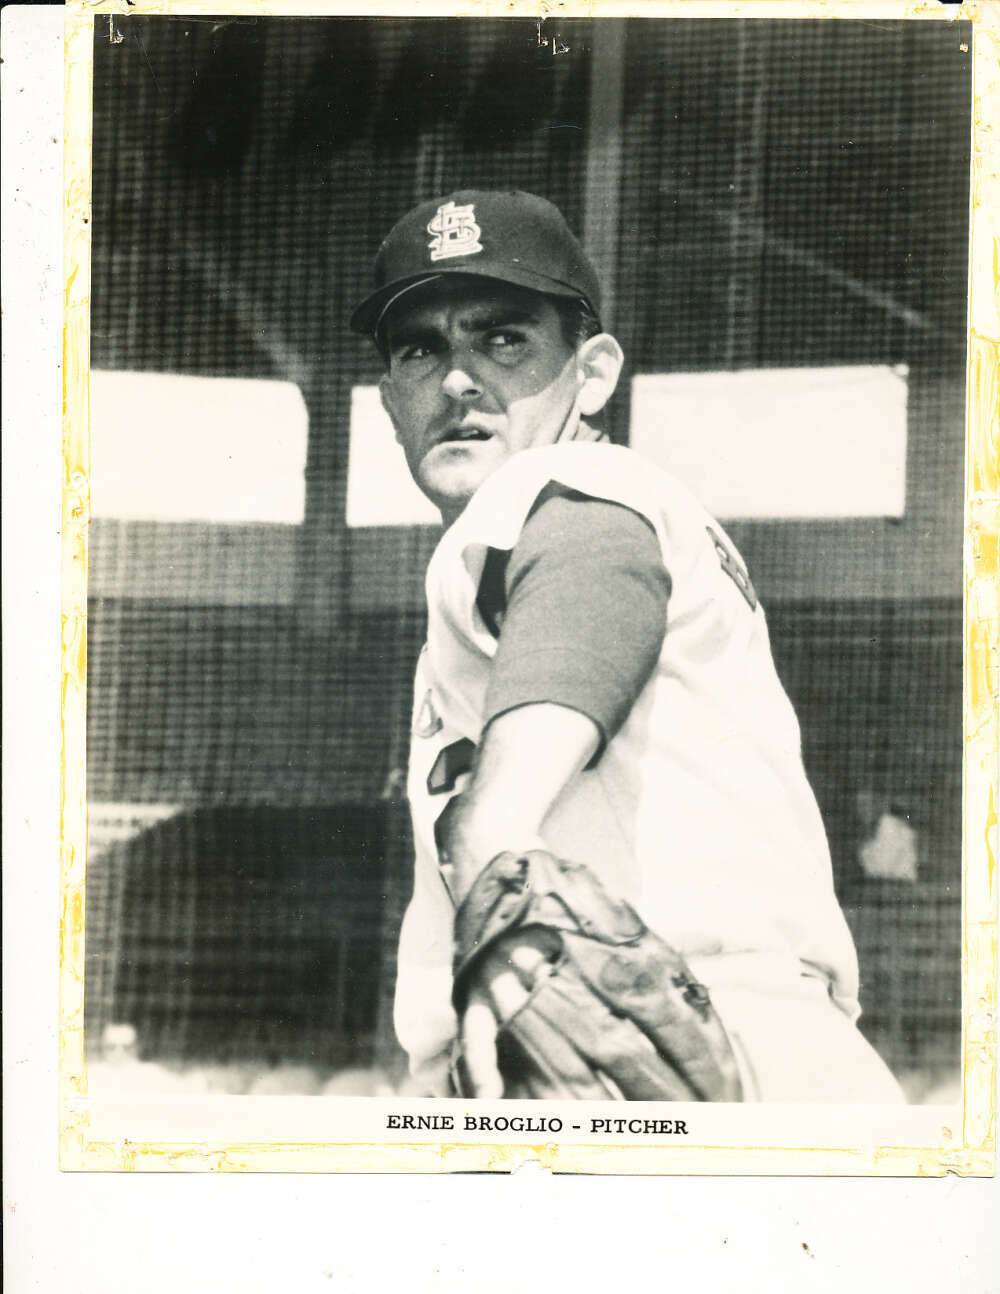 1964 Ernie Broglio St. Louis Cardinals team issue picture 8x10 